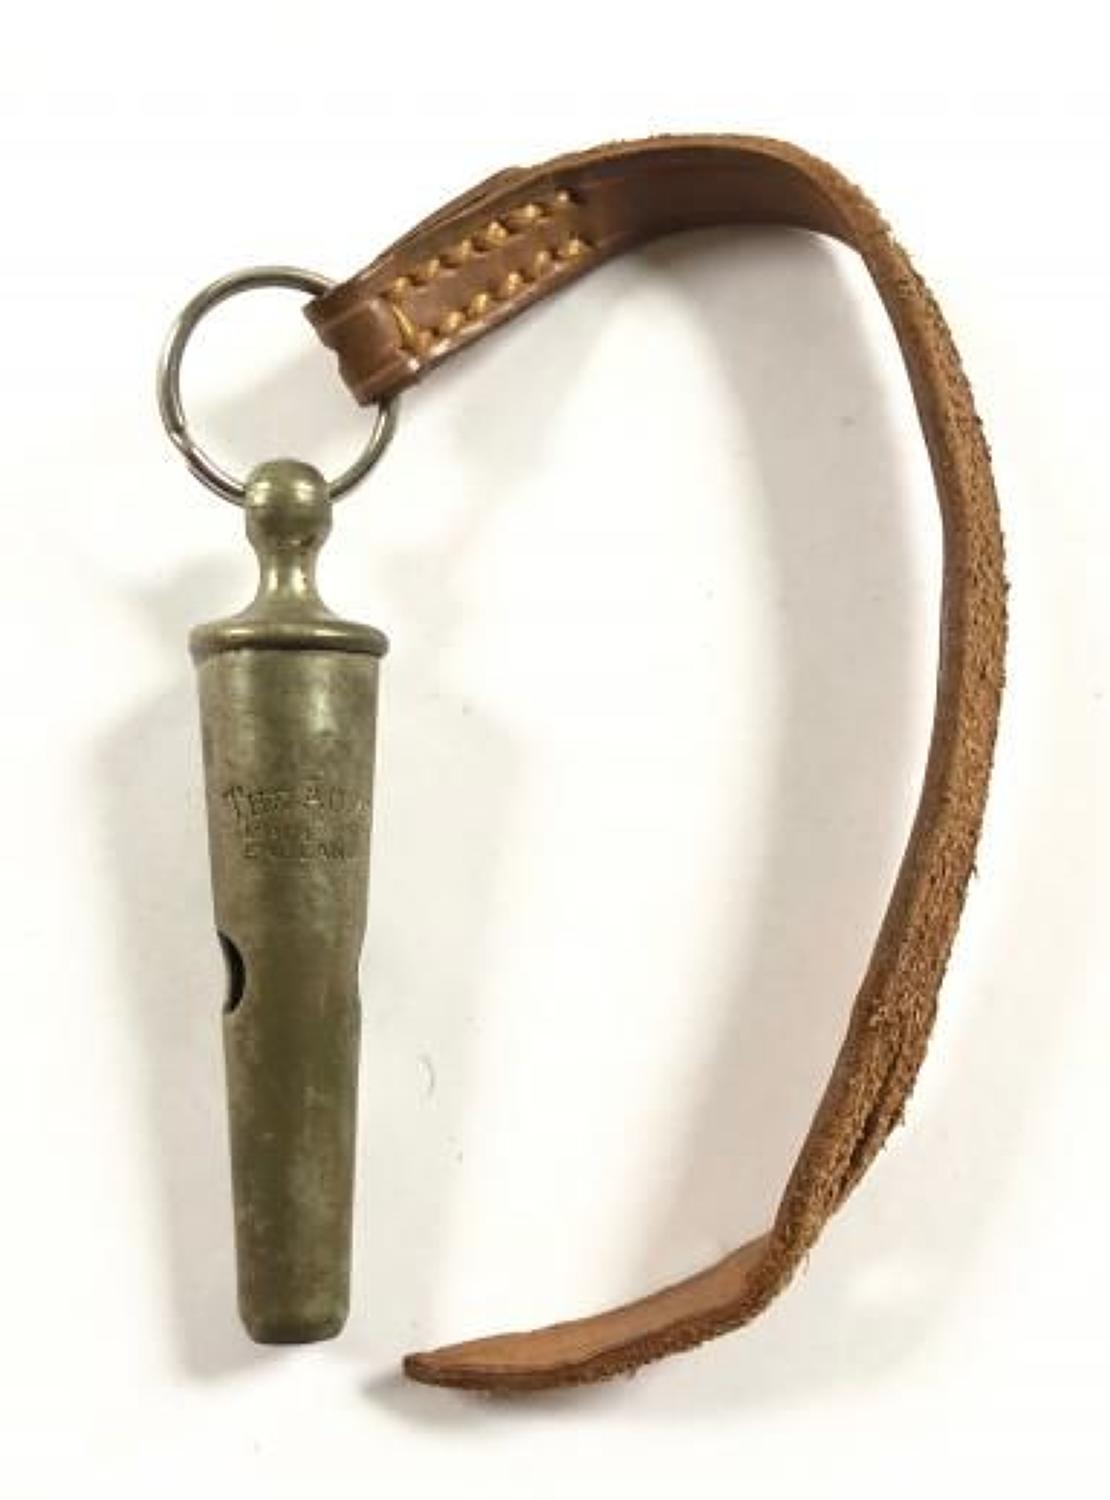 Boer War / WW1 Unusual Officer's Whistle.